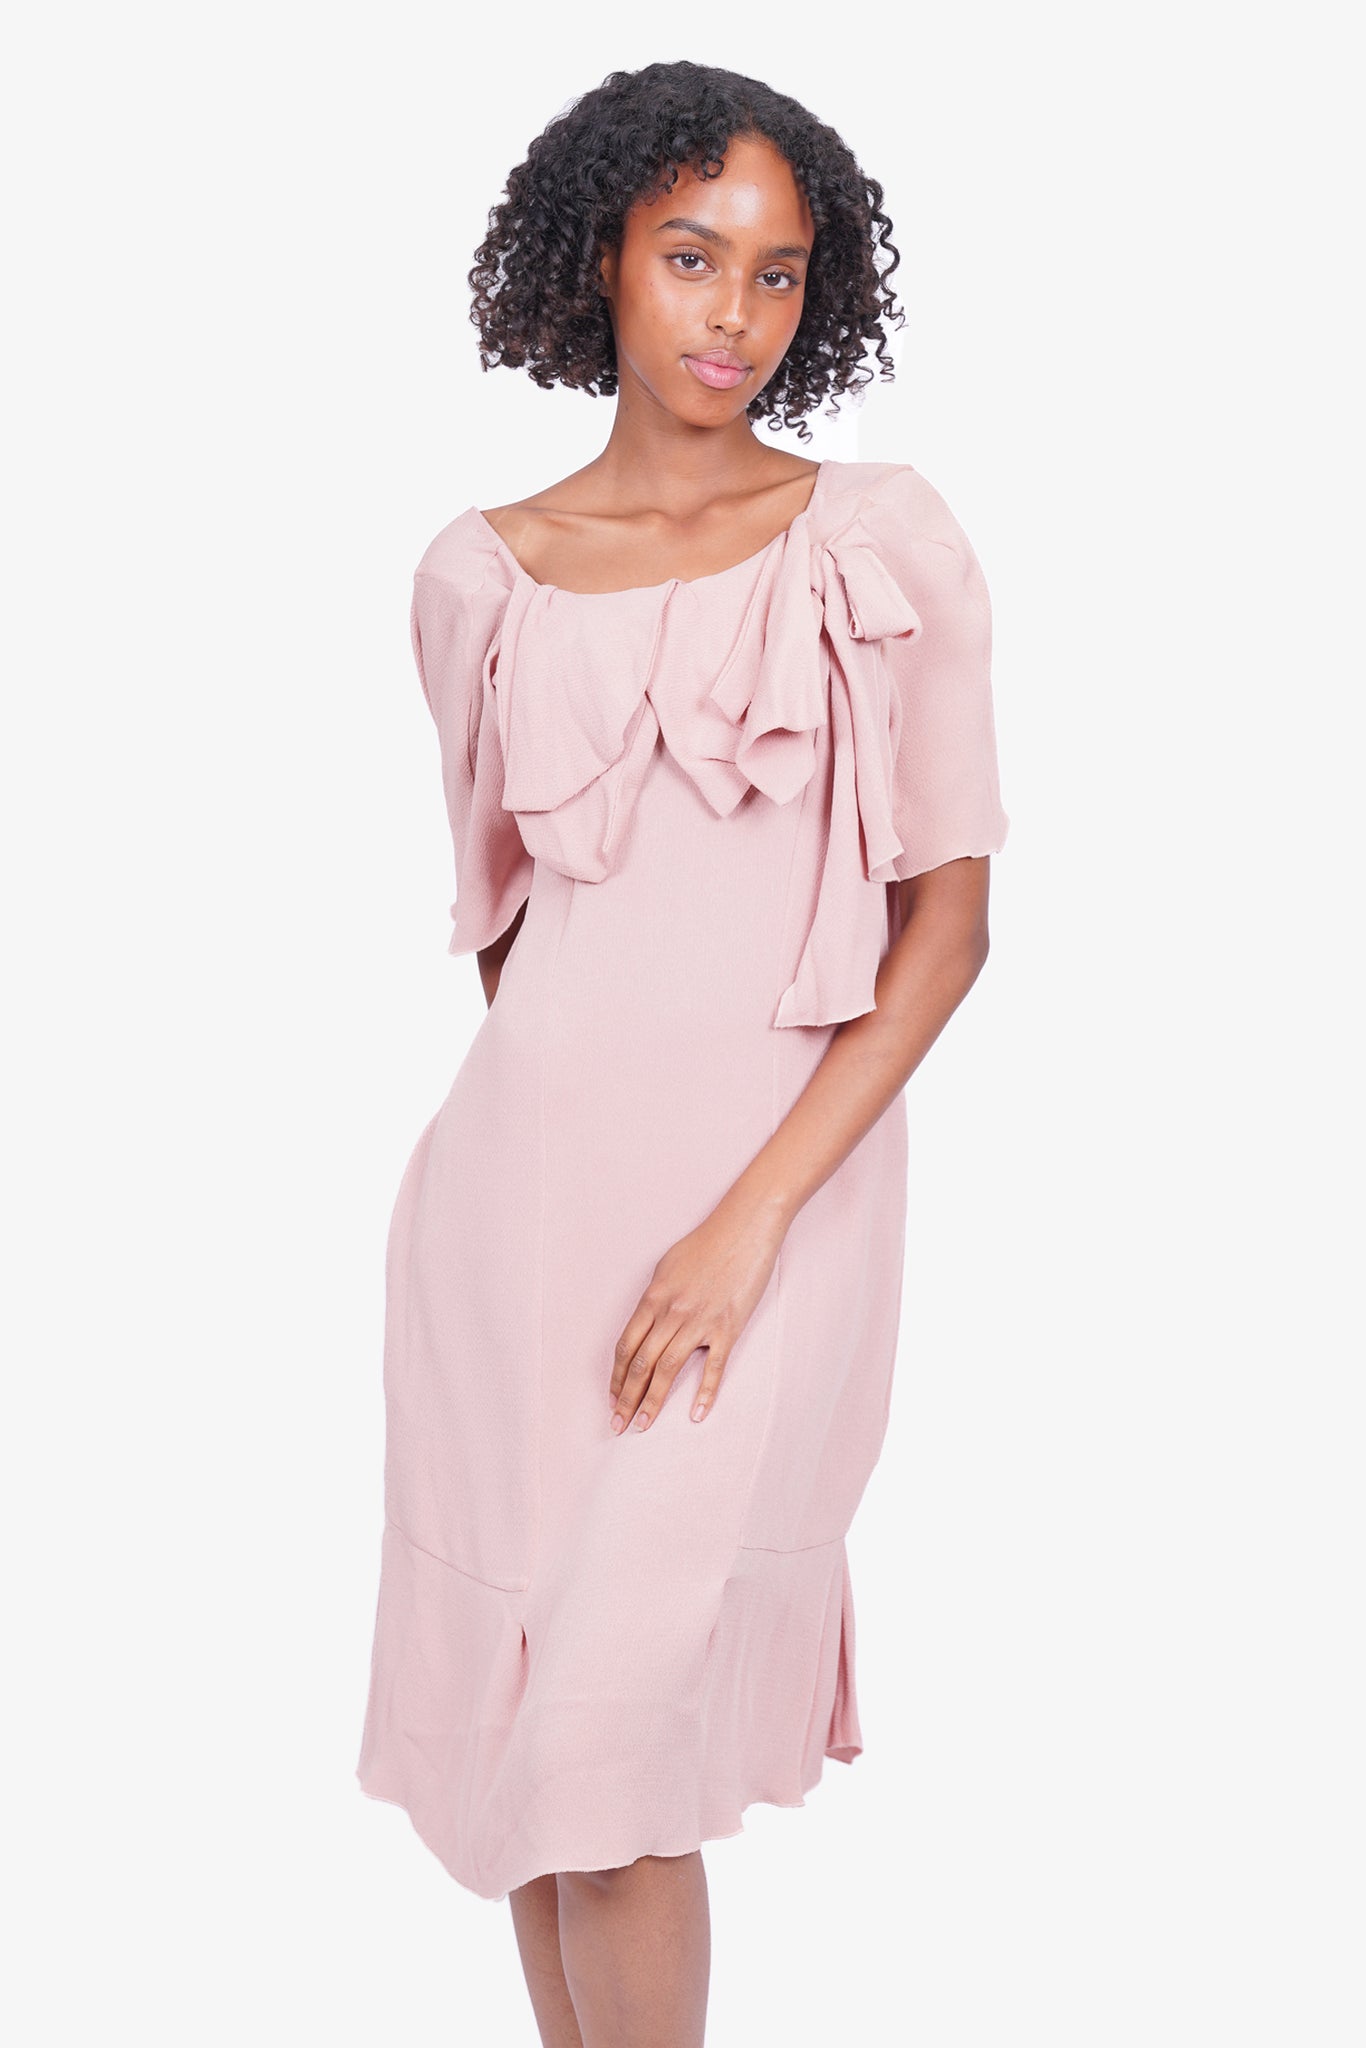 Marni Pink Silk Dress With Ruffles Size 40